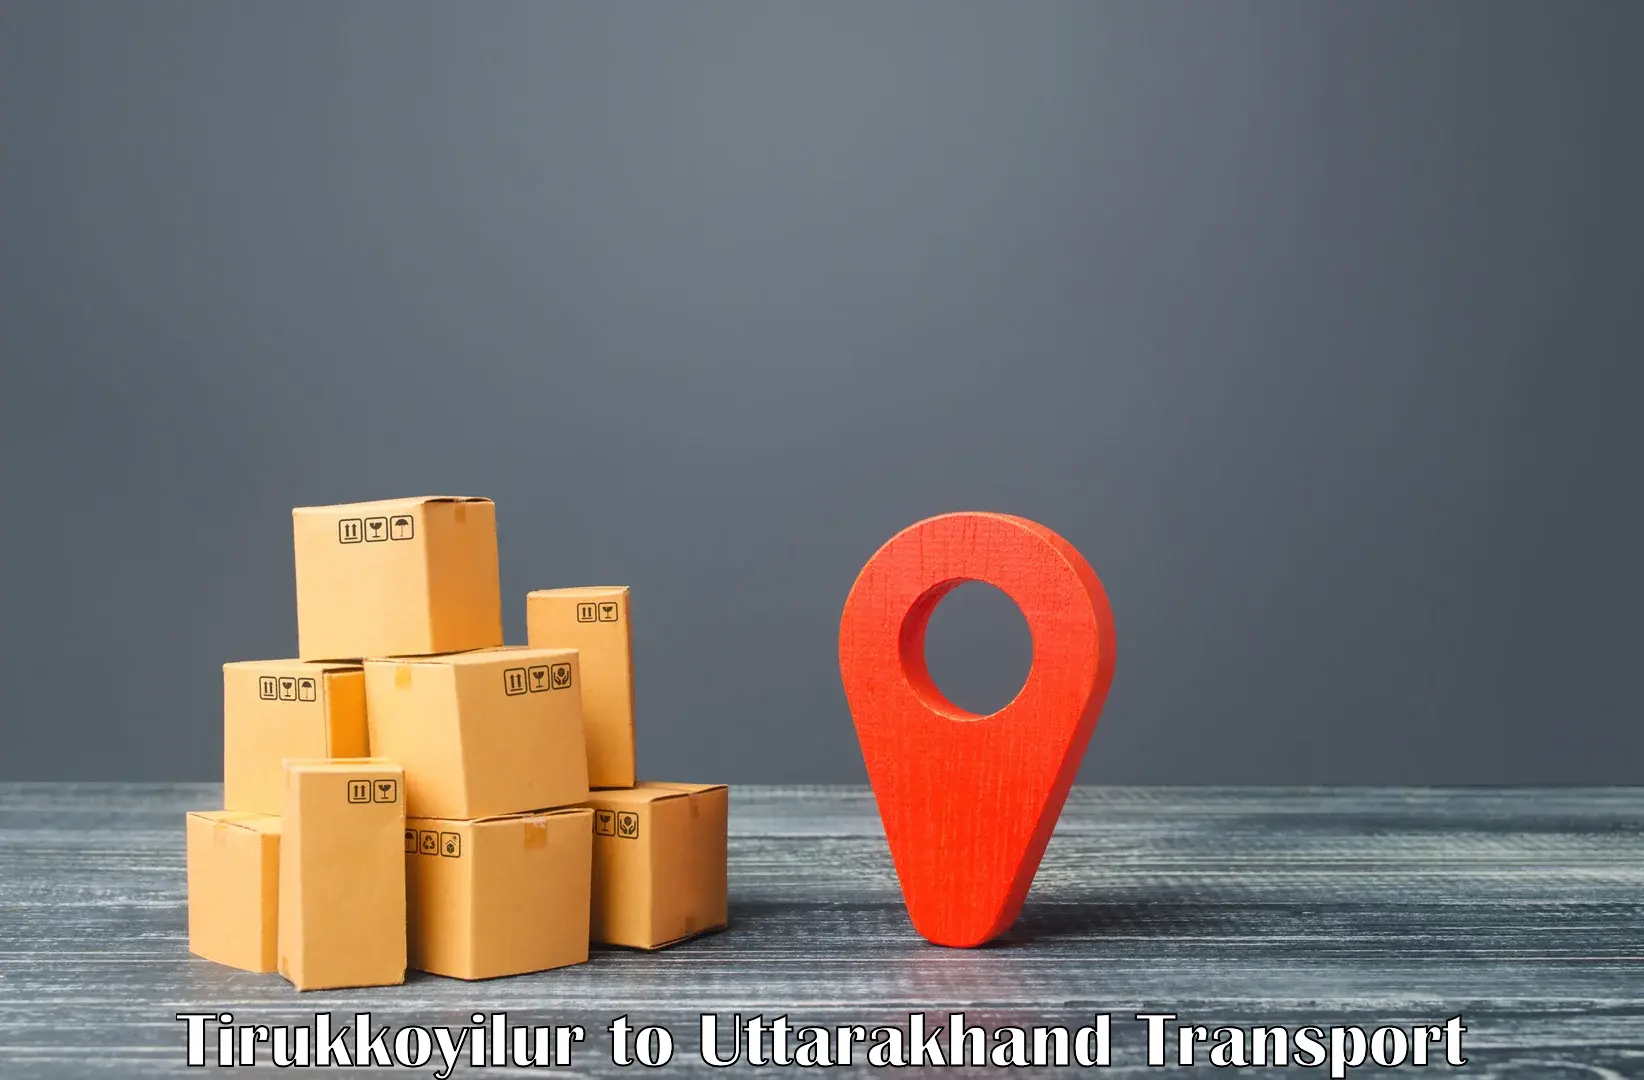 Land transport services in Tirukkoyilur to Rishikesh